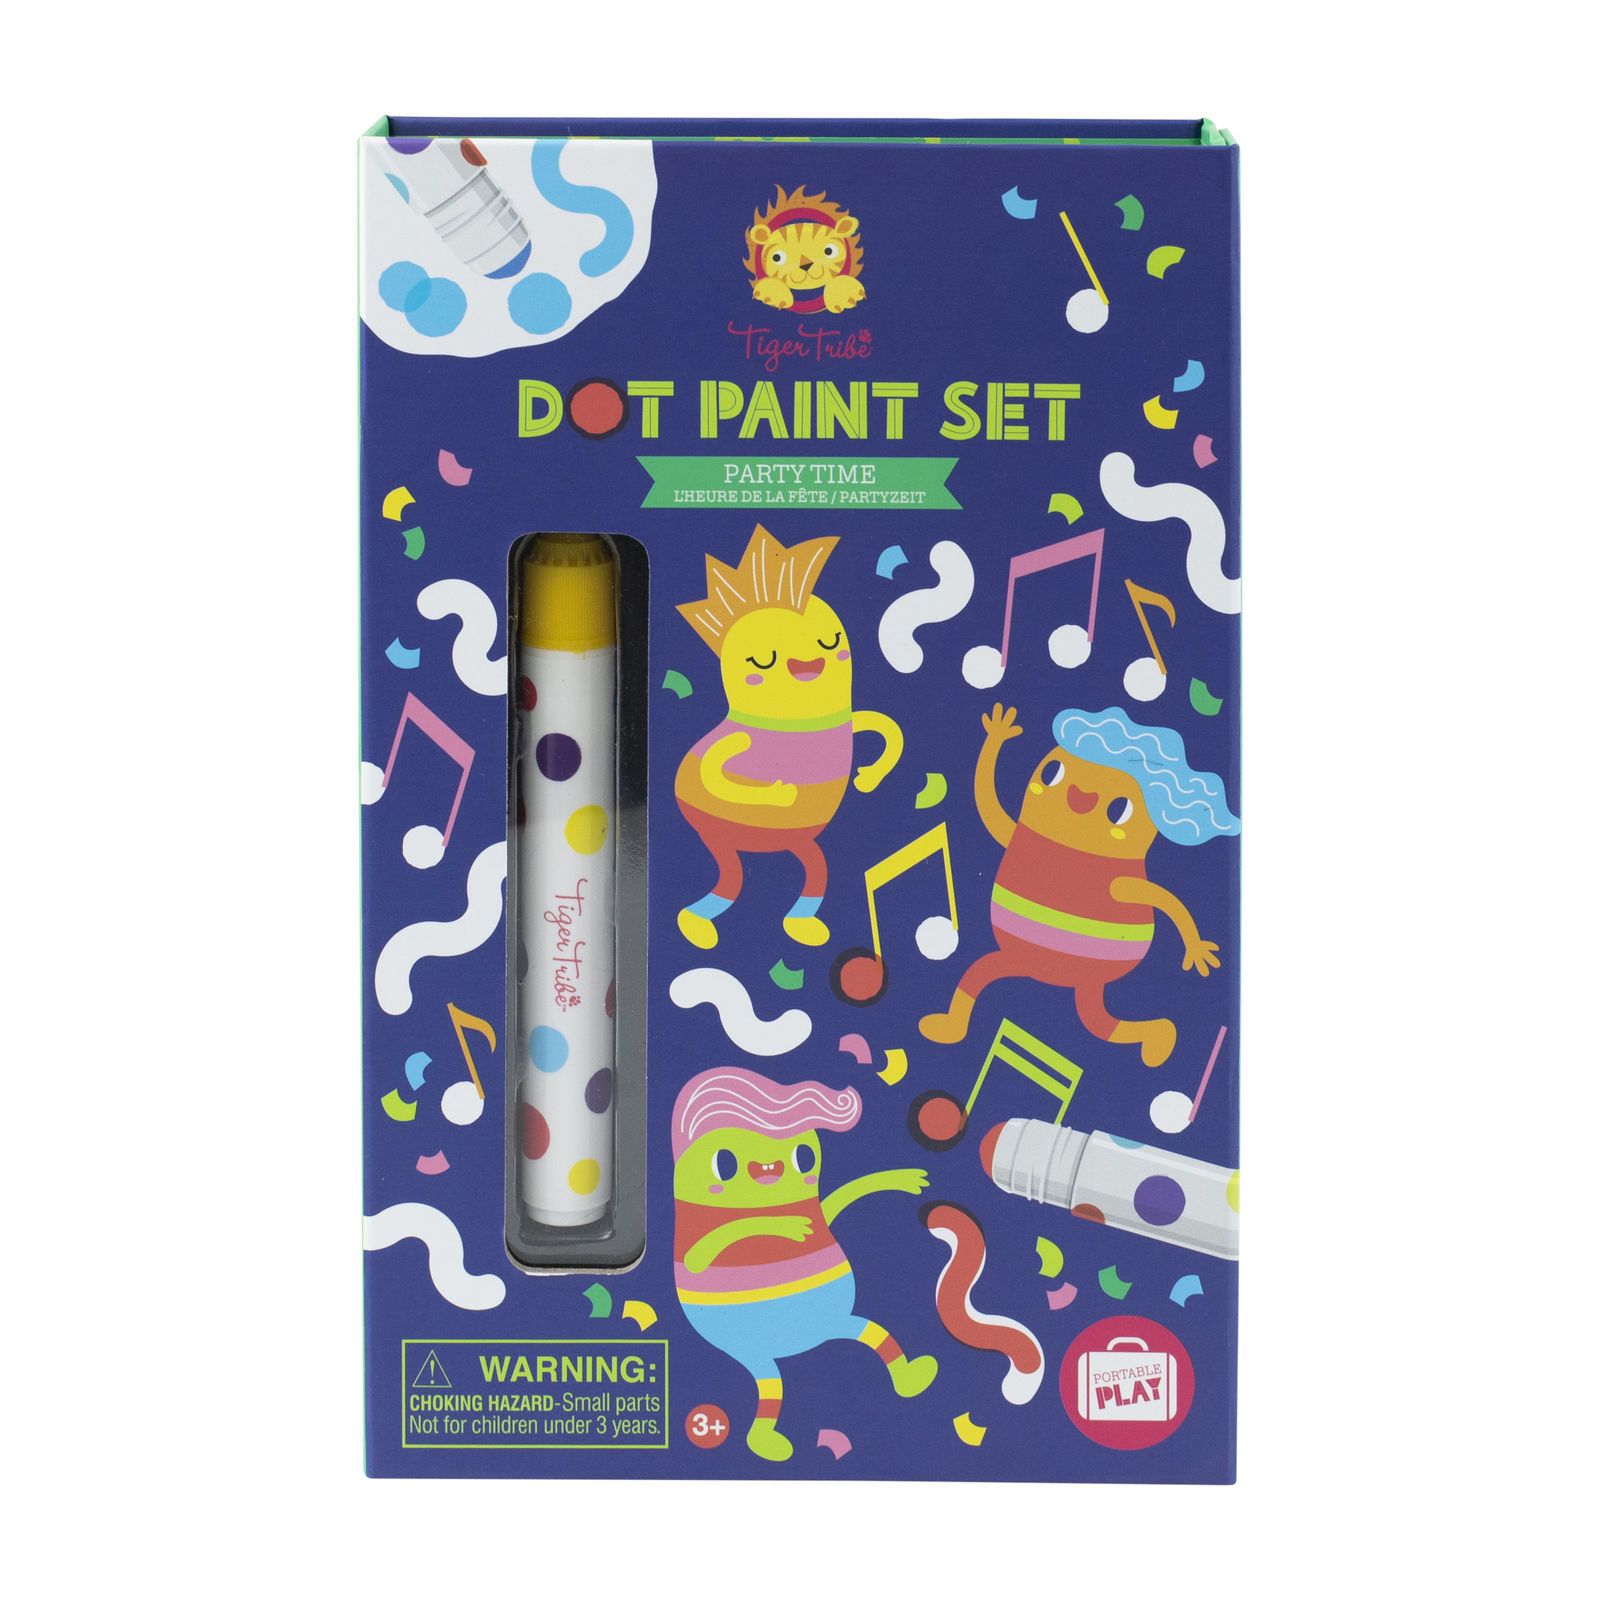 Dot Paint Set (Party Time)